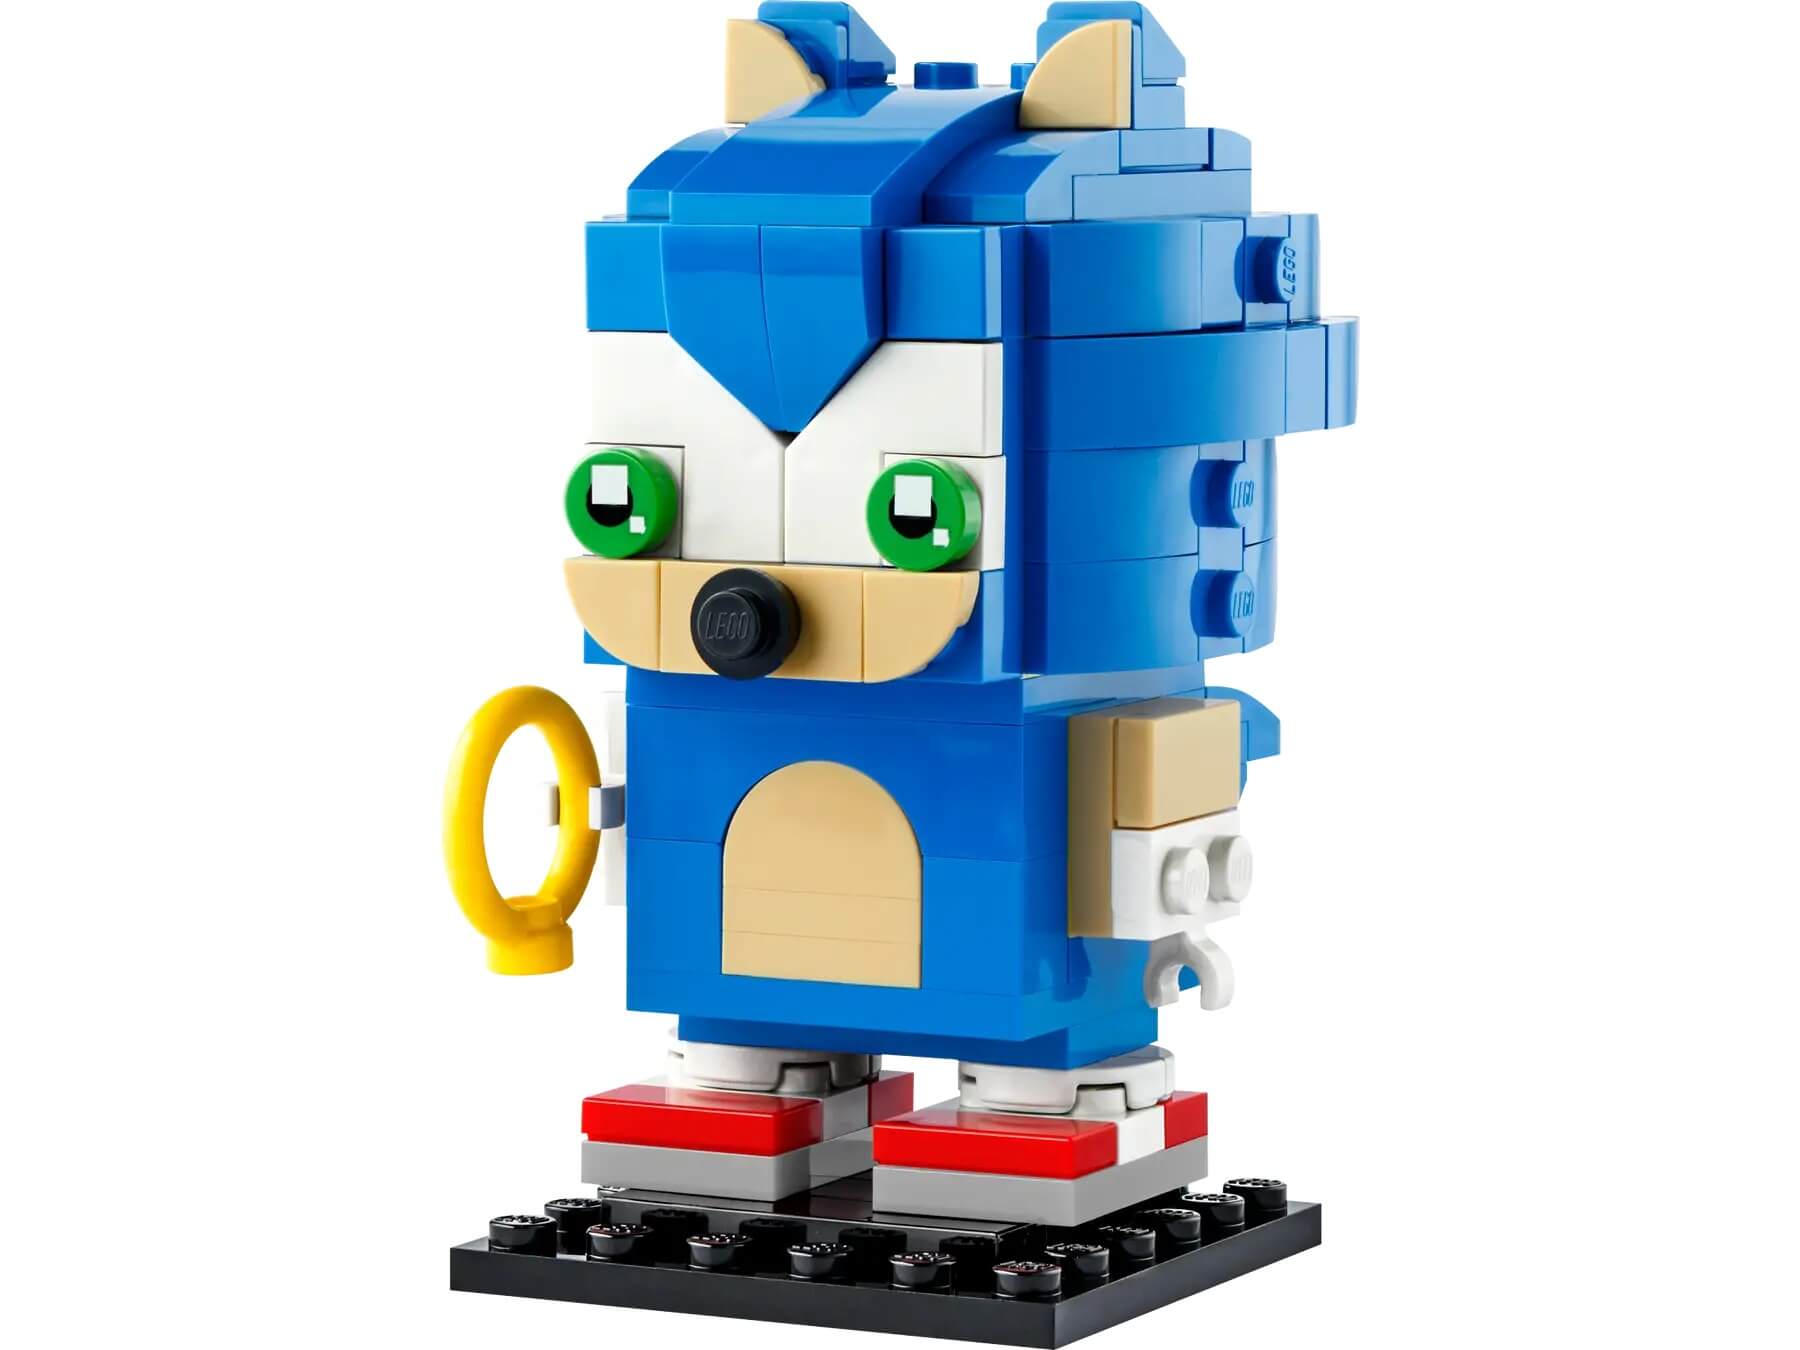 Конструктор Lego BrickHeadz Sonic the Hedgehog 40627, 139 деталей фигурка утка tubbz sonic – the hedgehog knuckles 9 см